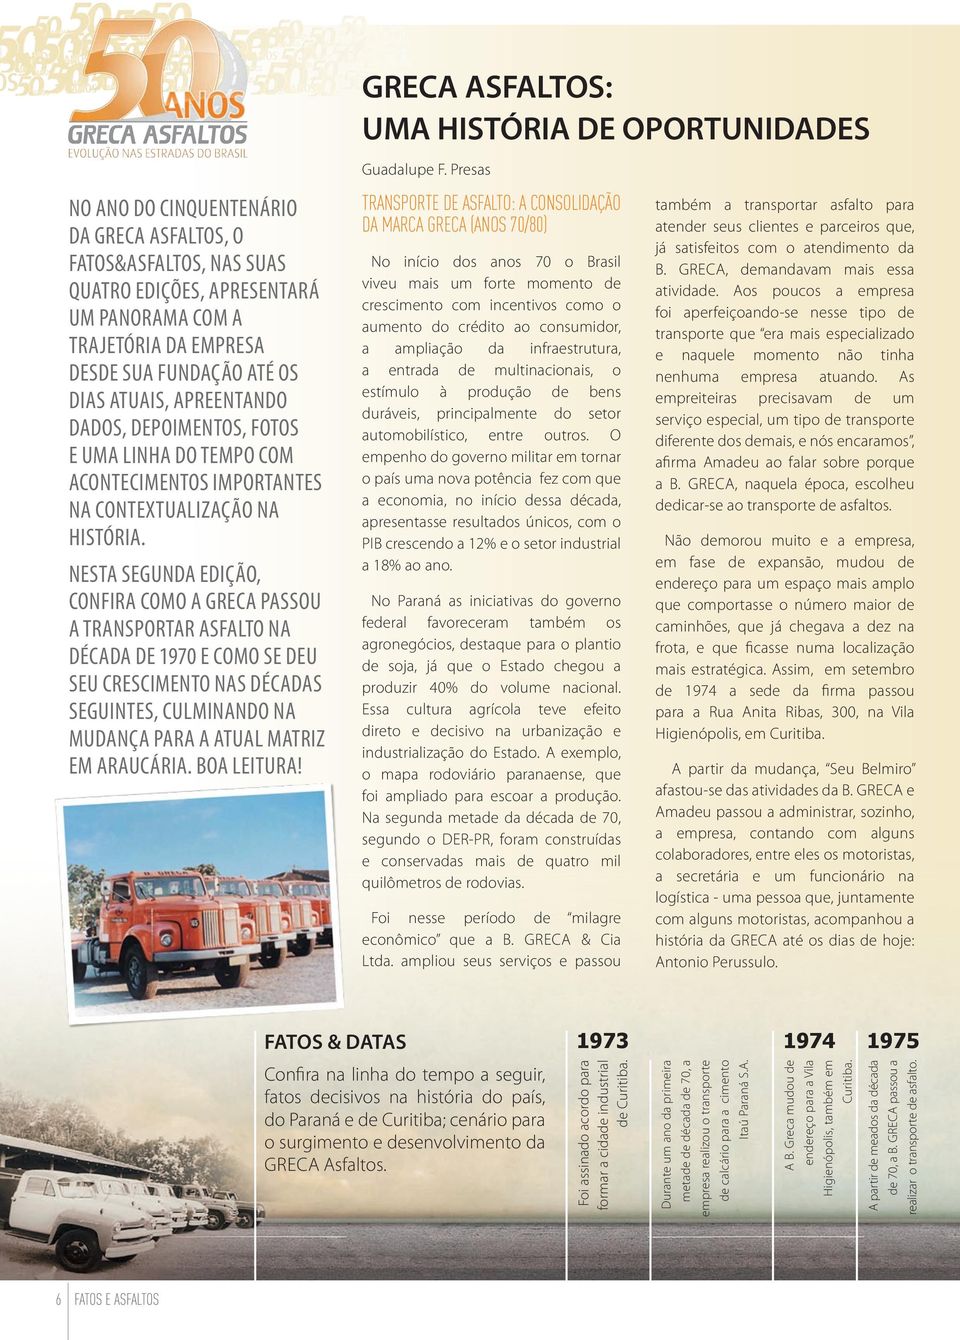 Nesta segunda edição, confira como a Greca passou a transportar asfalto na década de 1970 e como se deu seu crescimento nas décadas seguintes, culminando na mudança para a atual matriz em Araucária.